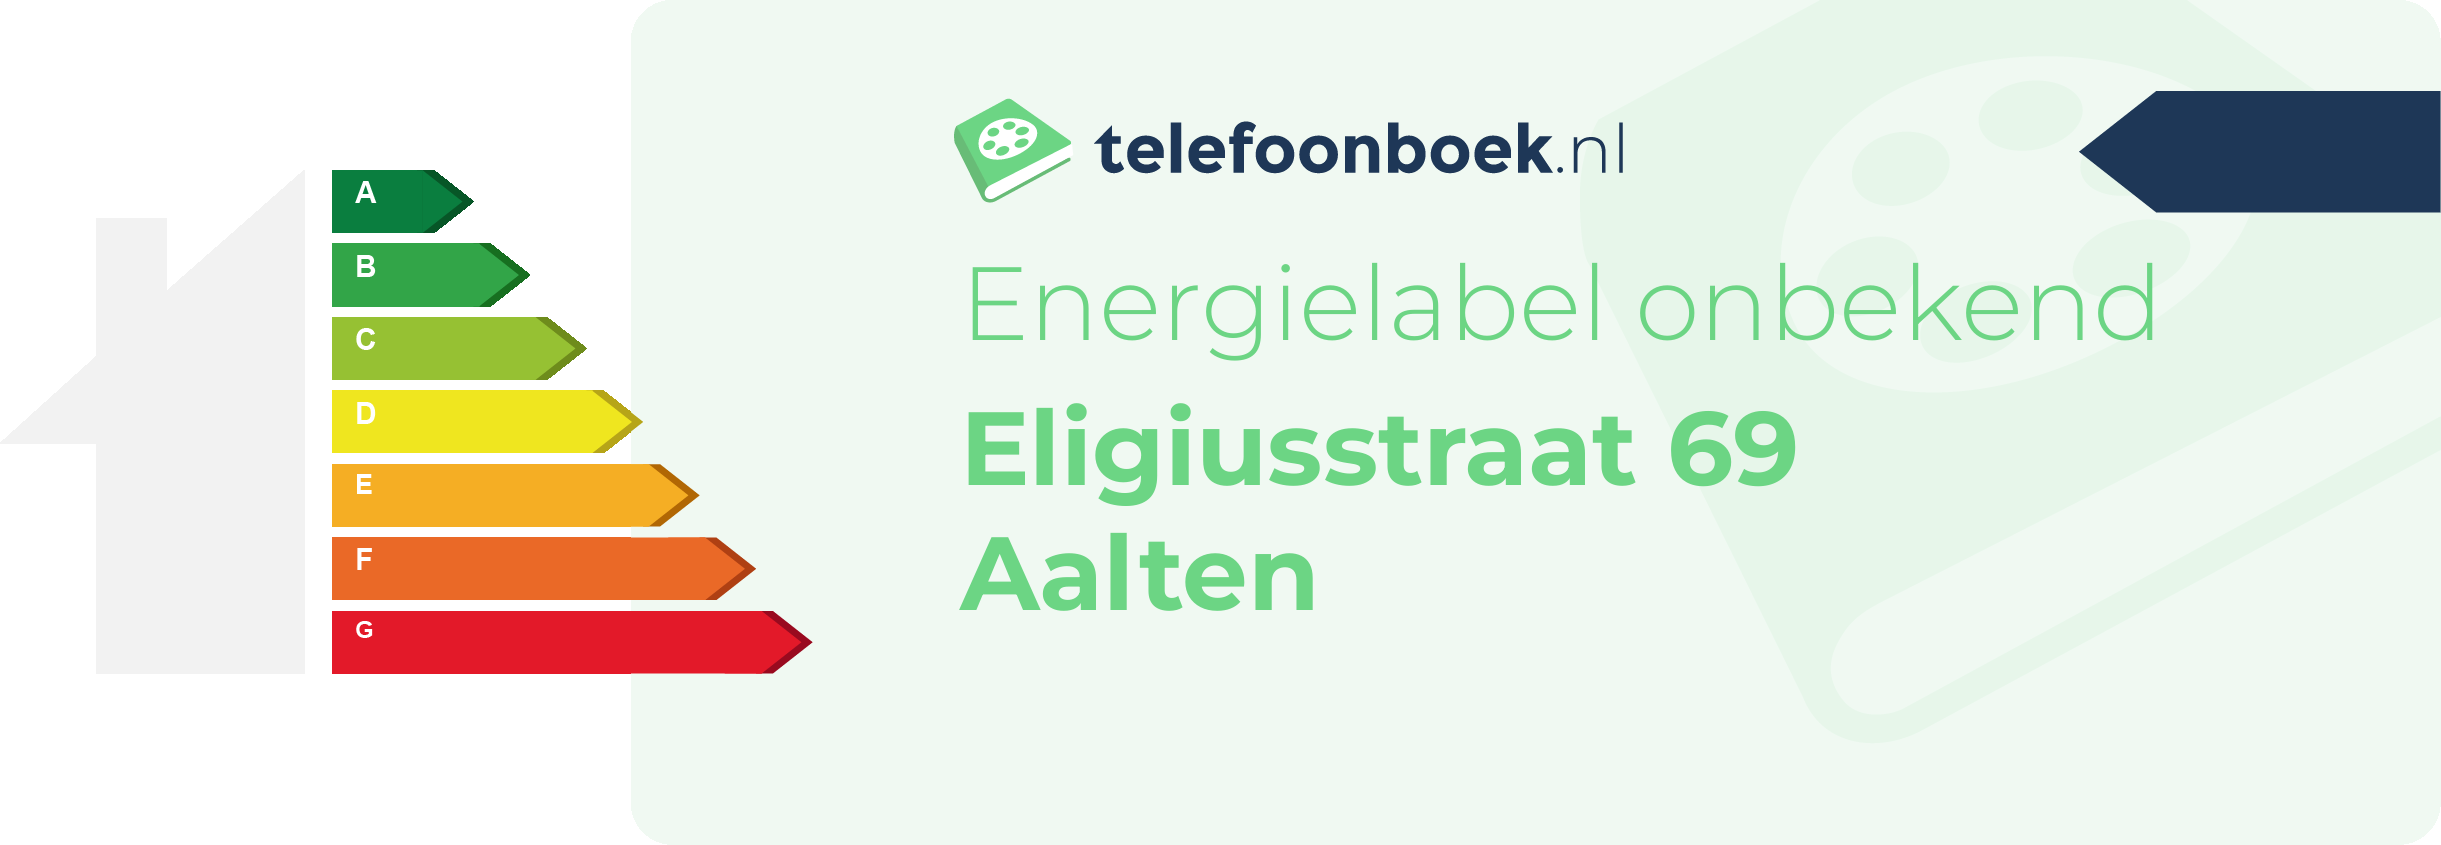 Energielabel Eligiusstraat 69 Aalten